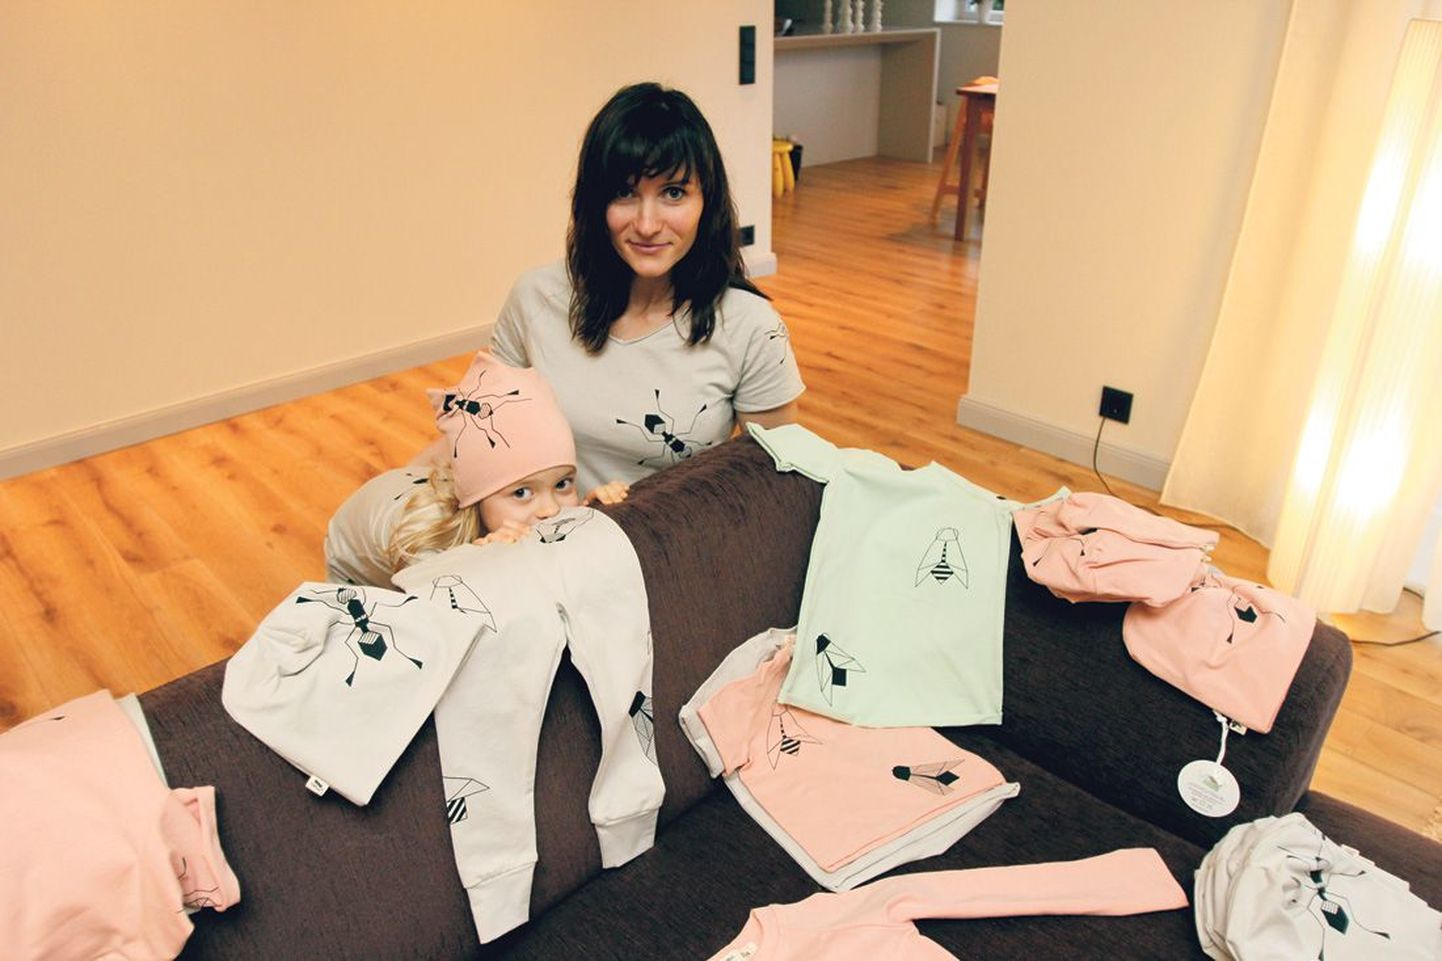 Loomemajanduskeskuses kaitses edukalt äriplaani ka Ruth Mändma, kes toodab juba mitu kuud graafilise prindiga lasterõivaid. Pildil demonstreerib Mändma oma rõivaid koos tütar Loorega.